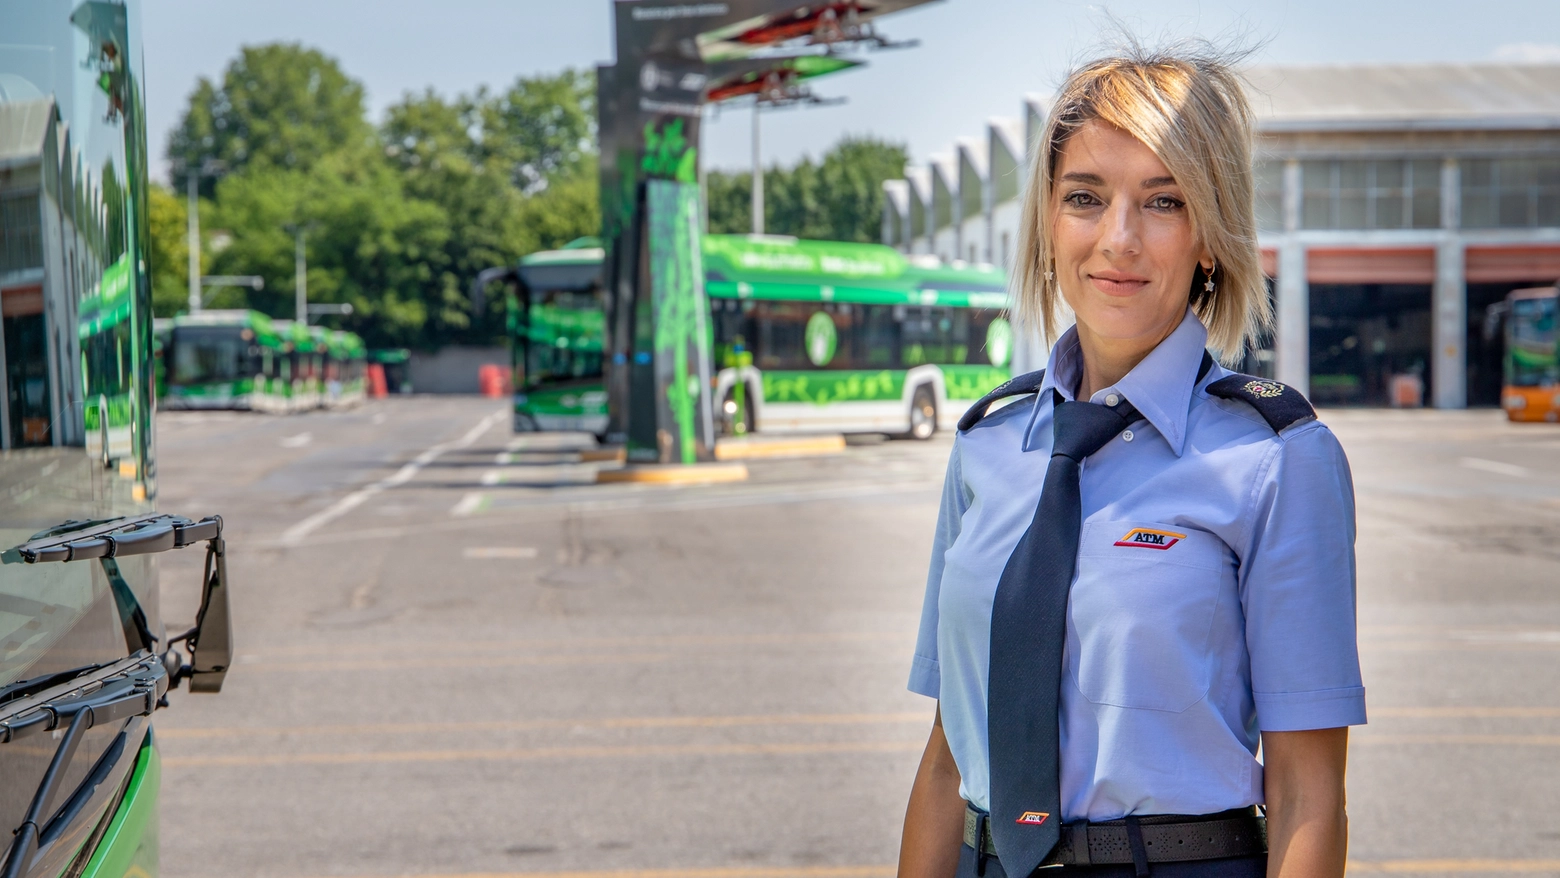 Una conducente di autobus al deposito Sarca: nell’ultimo anno il 10% delle nuove persone entrate in Atm alla guida dei bus è donna